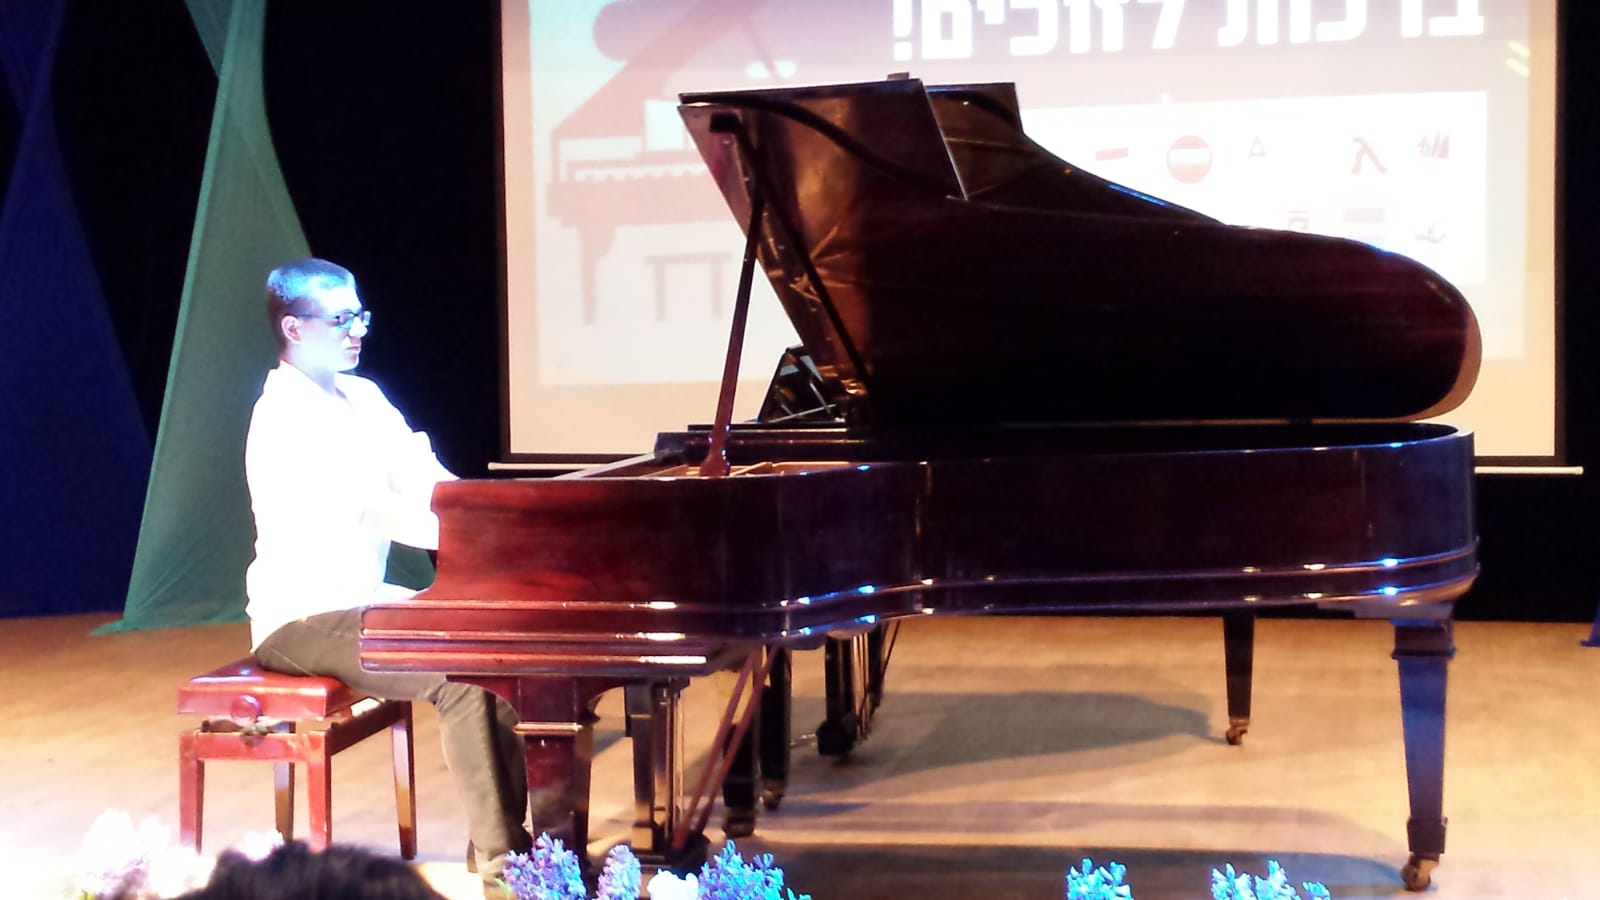 הצלחה גדולה לתלמידי קונסרבטוריון גבעתיים בתחרות הארצית "פסנתר לתמיד" באשדוד, חנוכה תשע"ט